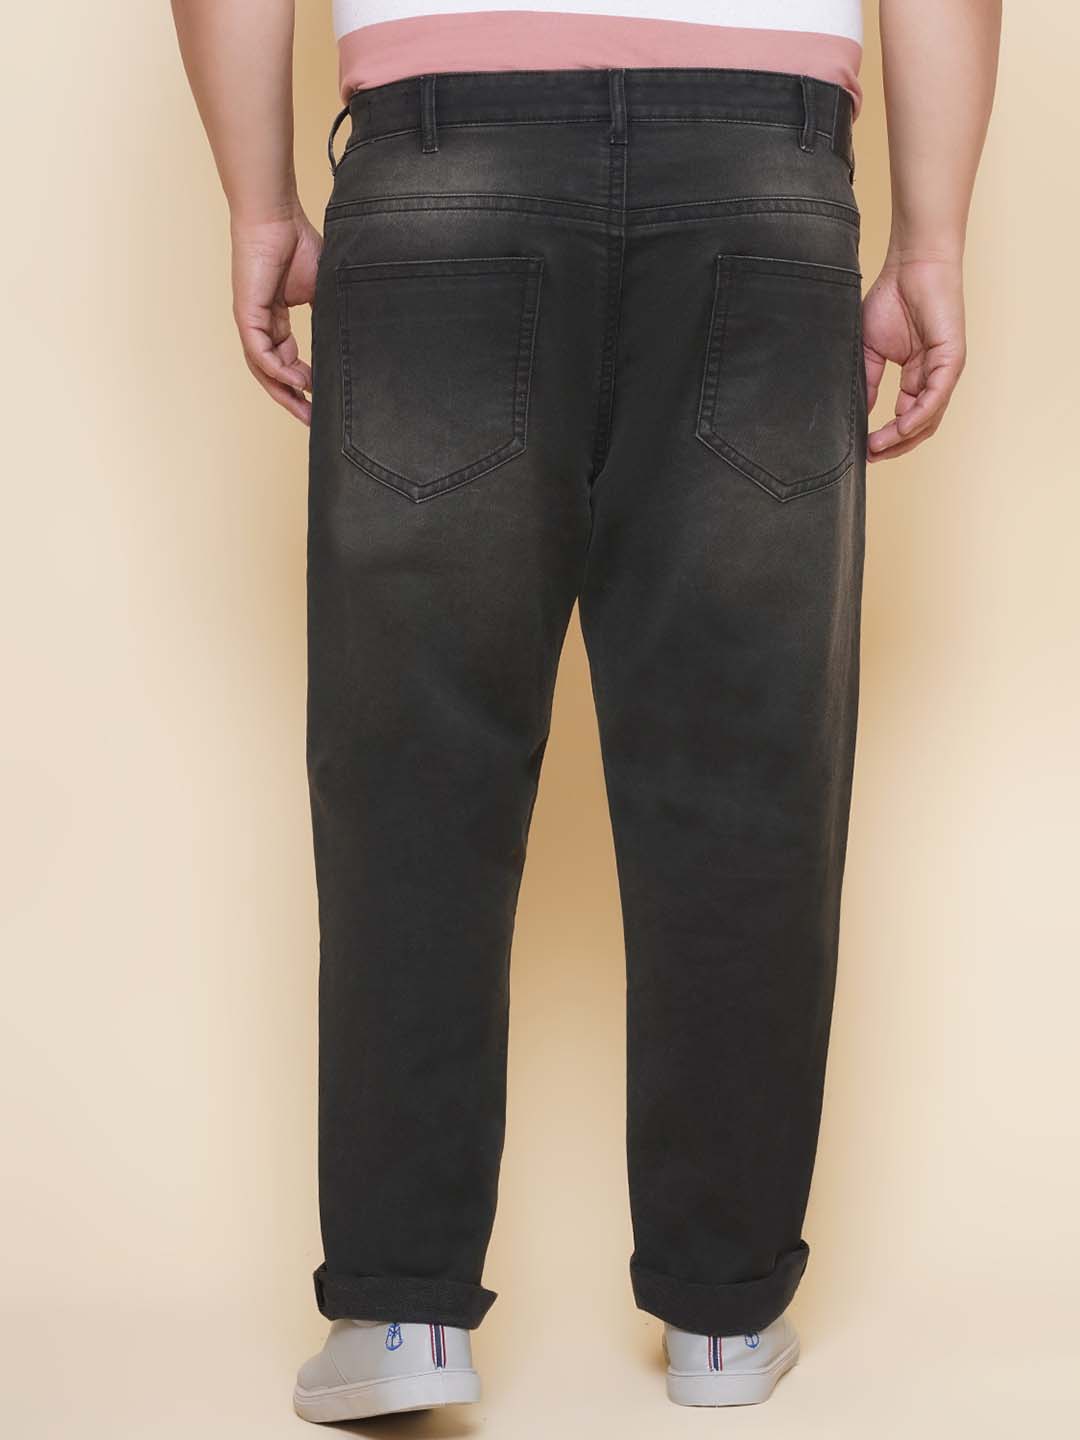 bottomwear/jeans/JPJ12429/jpj12429-5.jpg